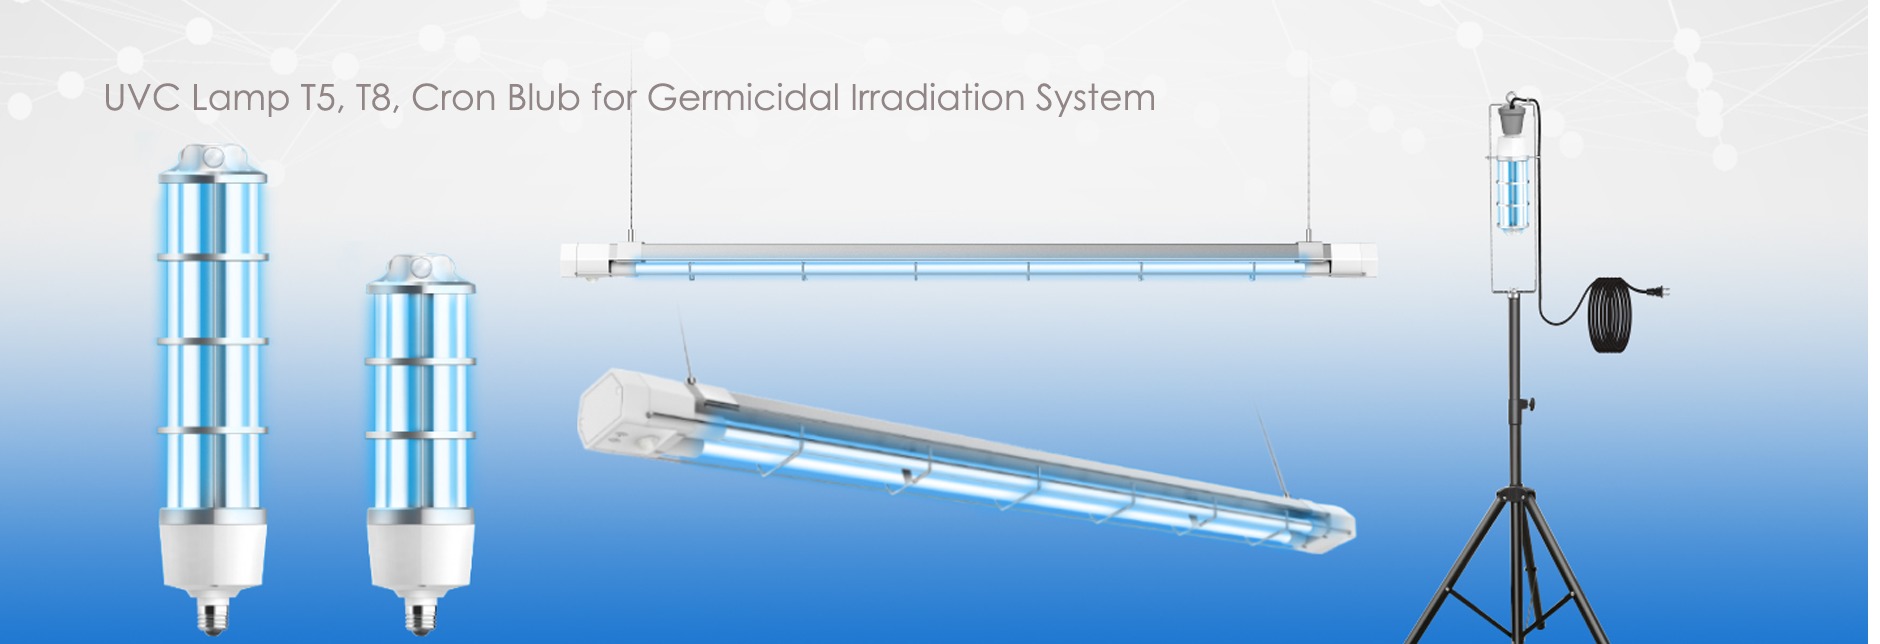 Germicidal Irradiation System